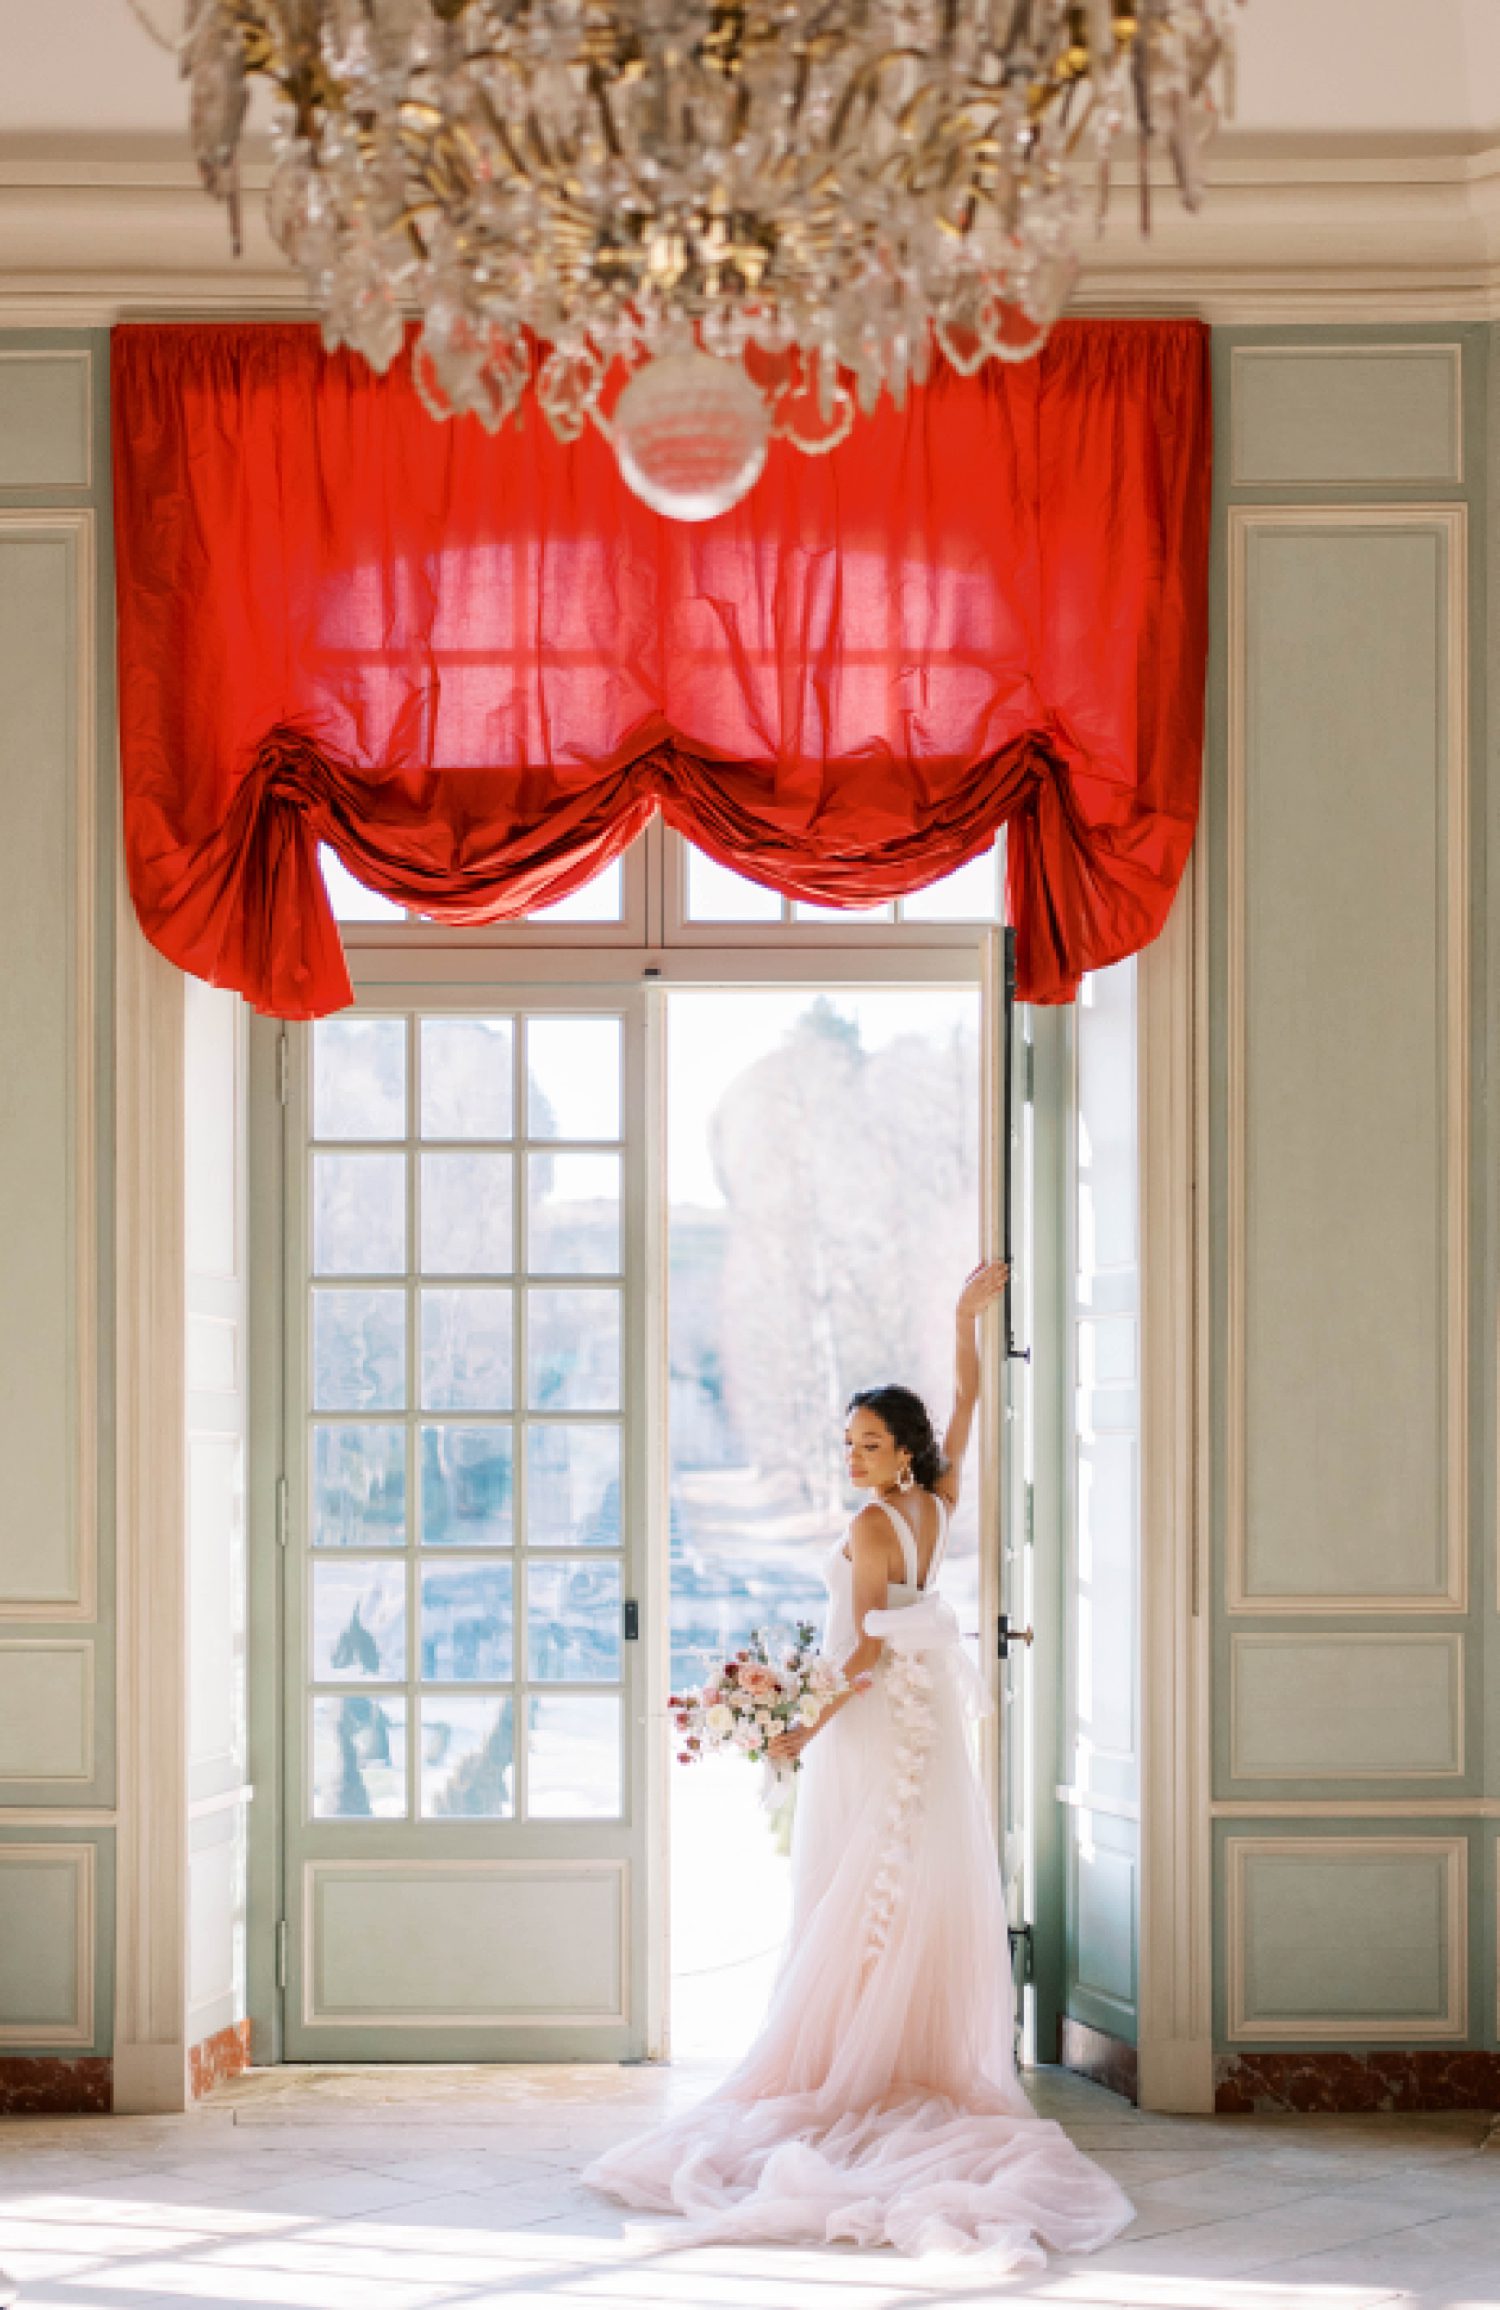 bride stands in doorway under red curtain in blush Marchesa wedding gown